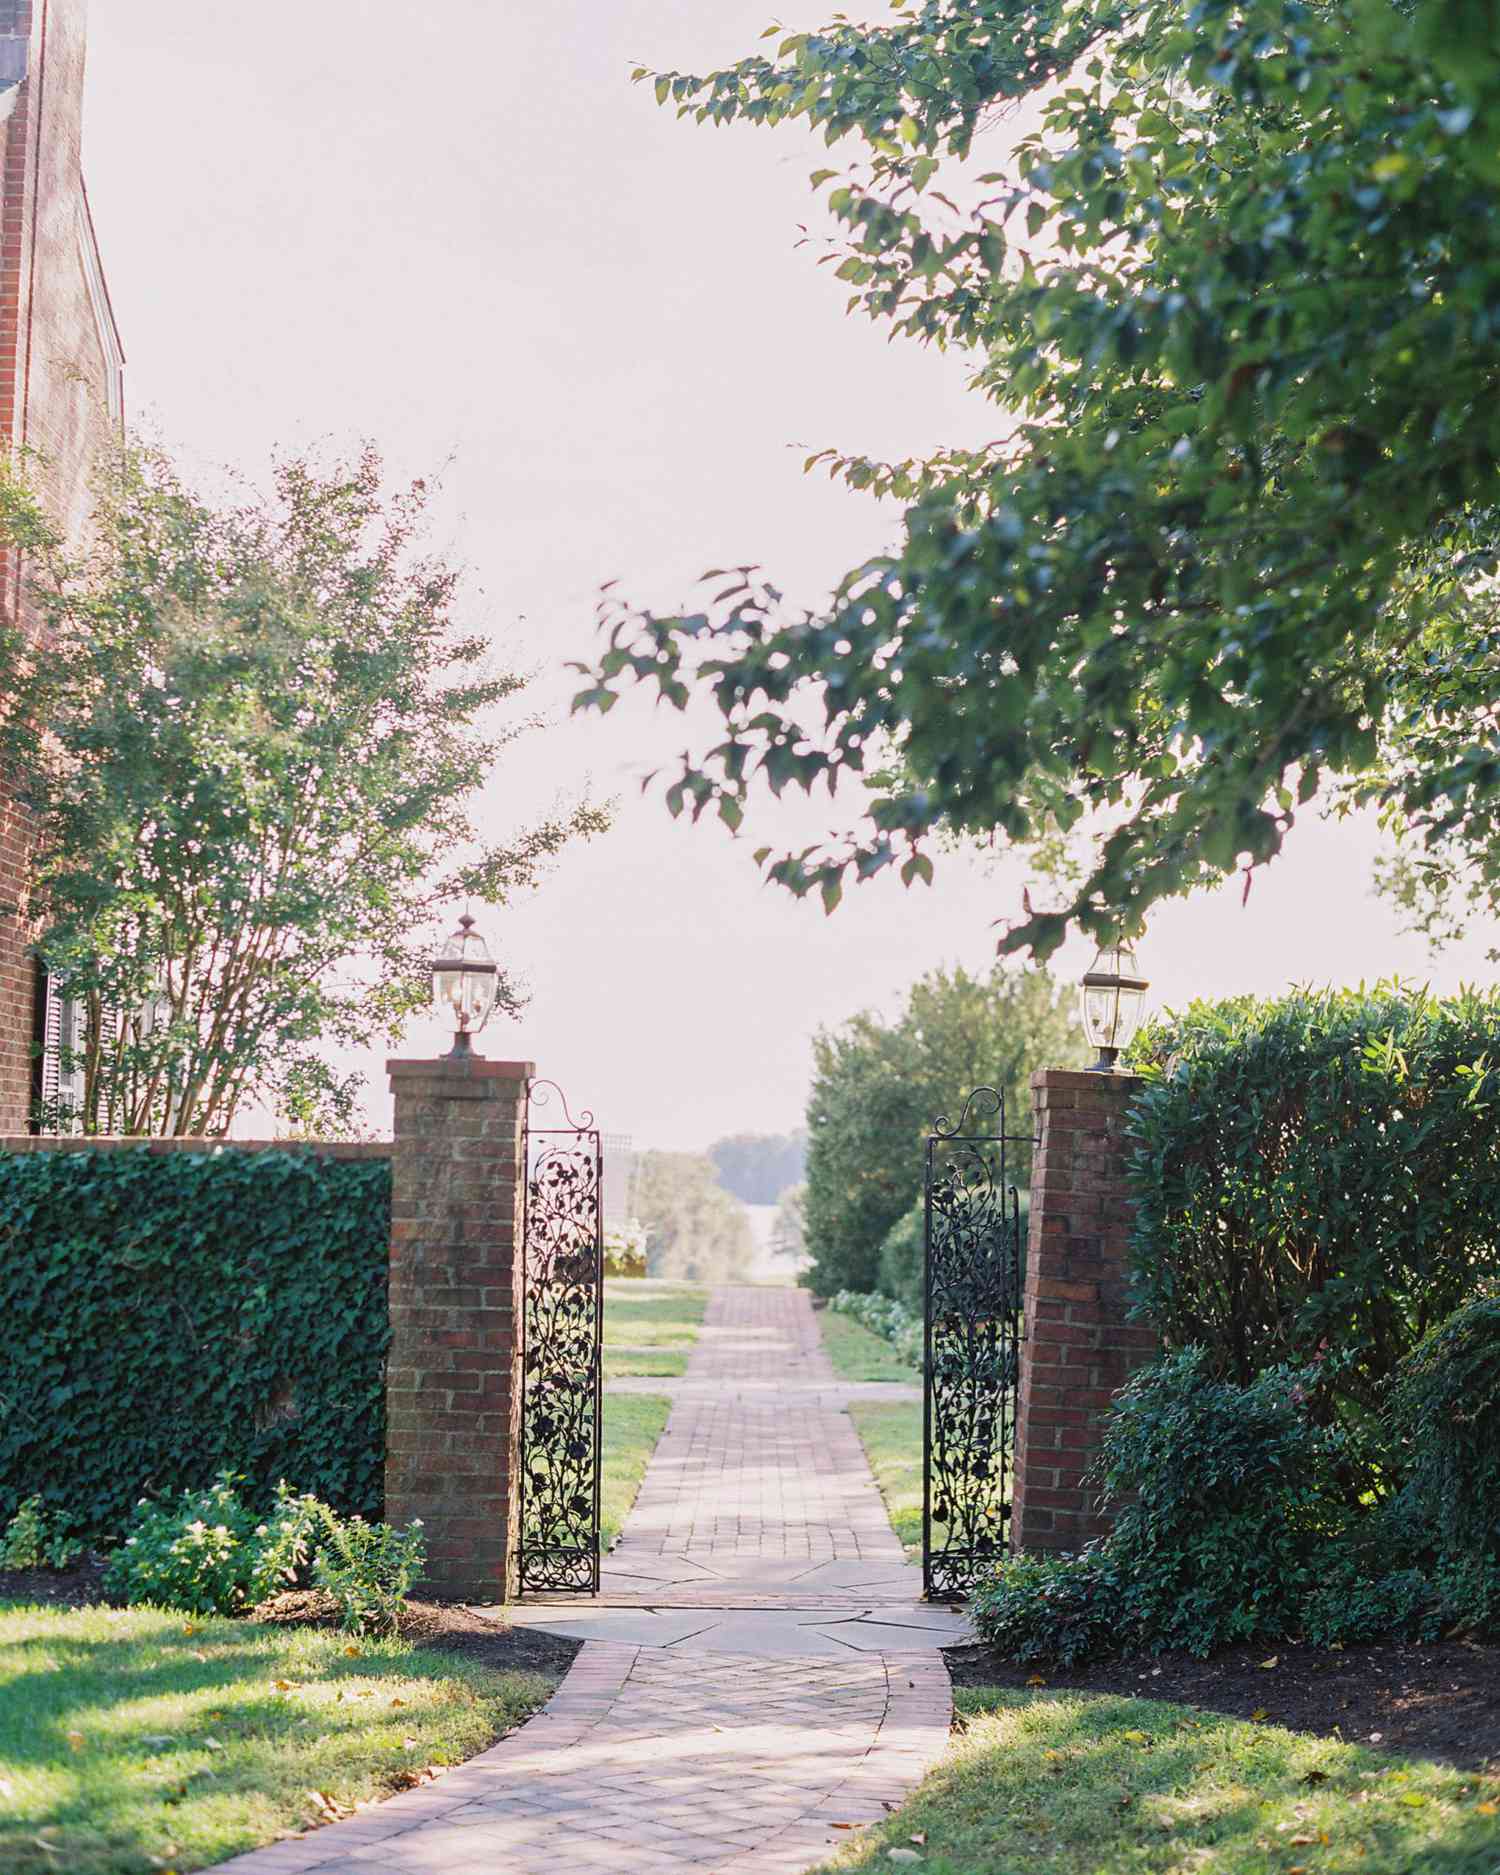 outdoor wedding venue gated entryway brick walkway